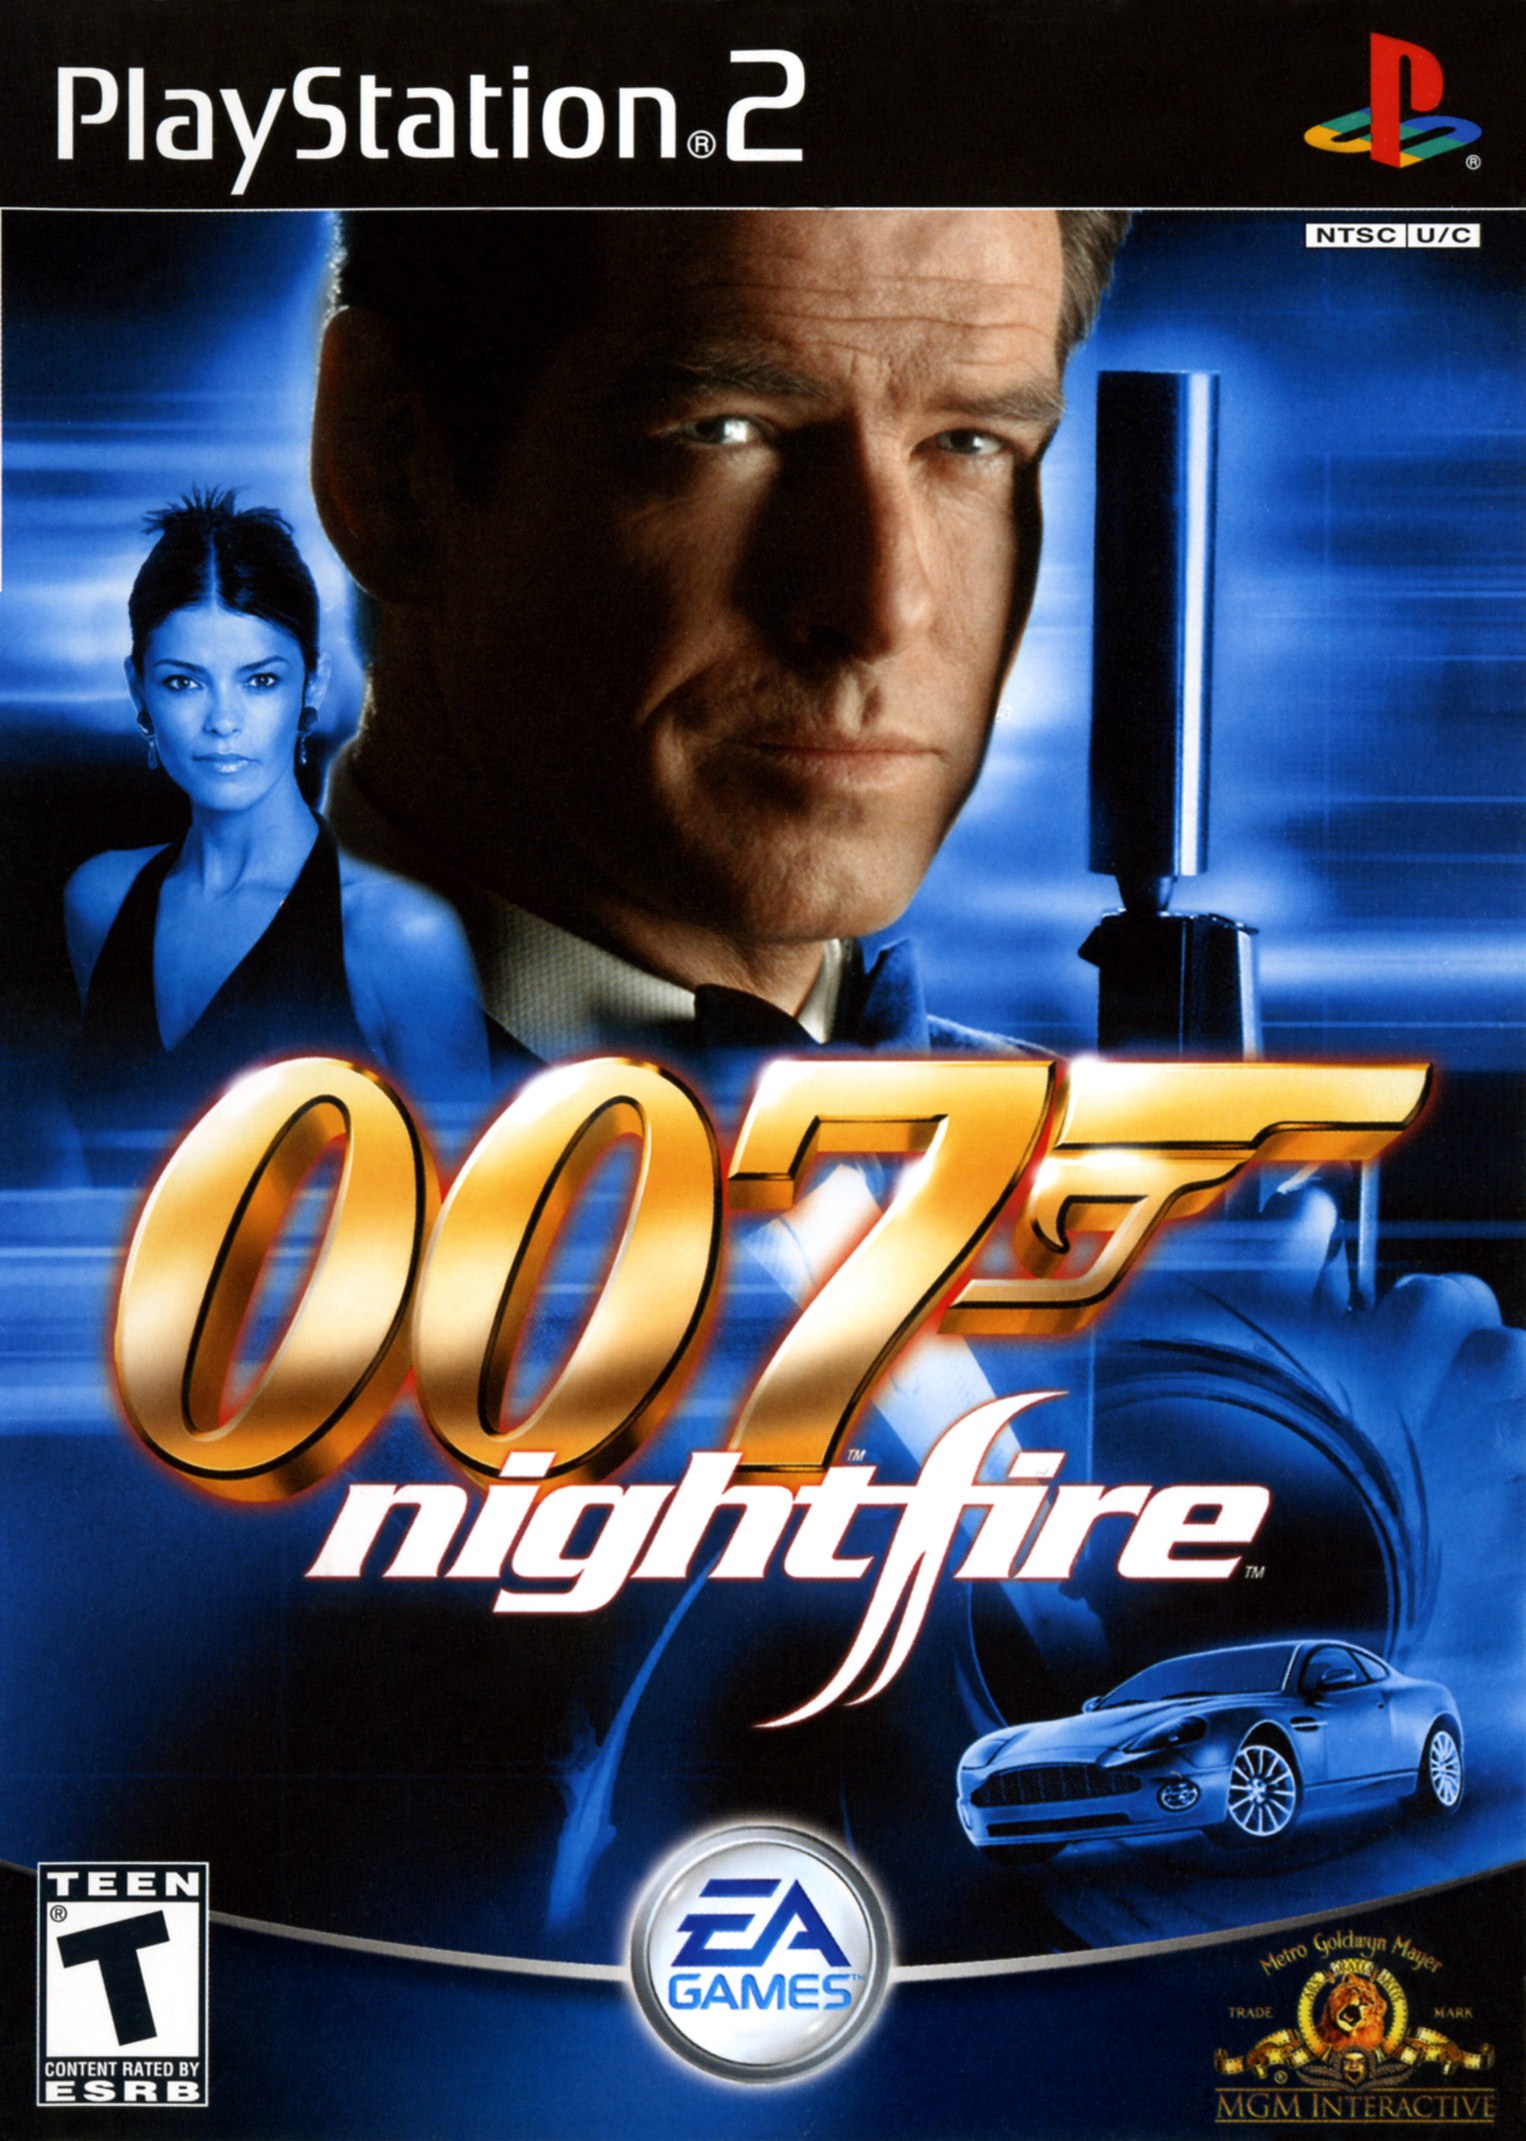 james bond 007 nightfire platforms